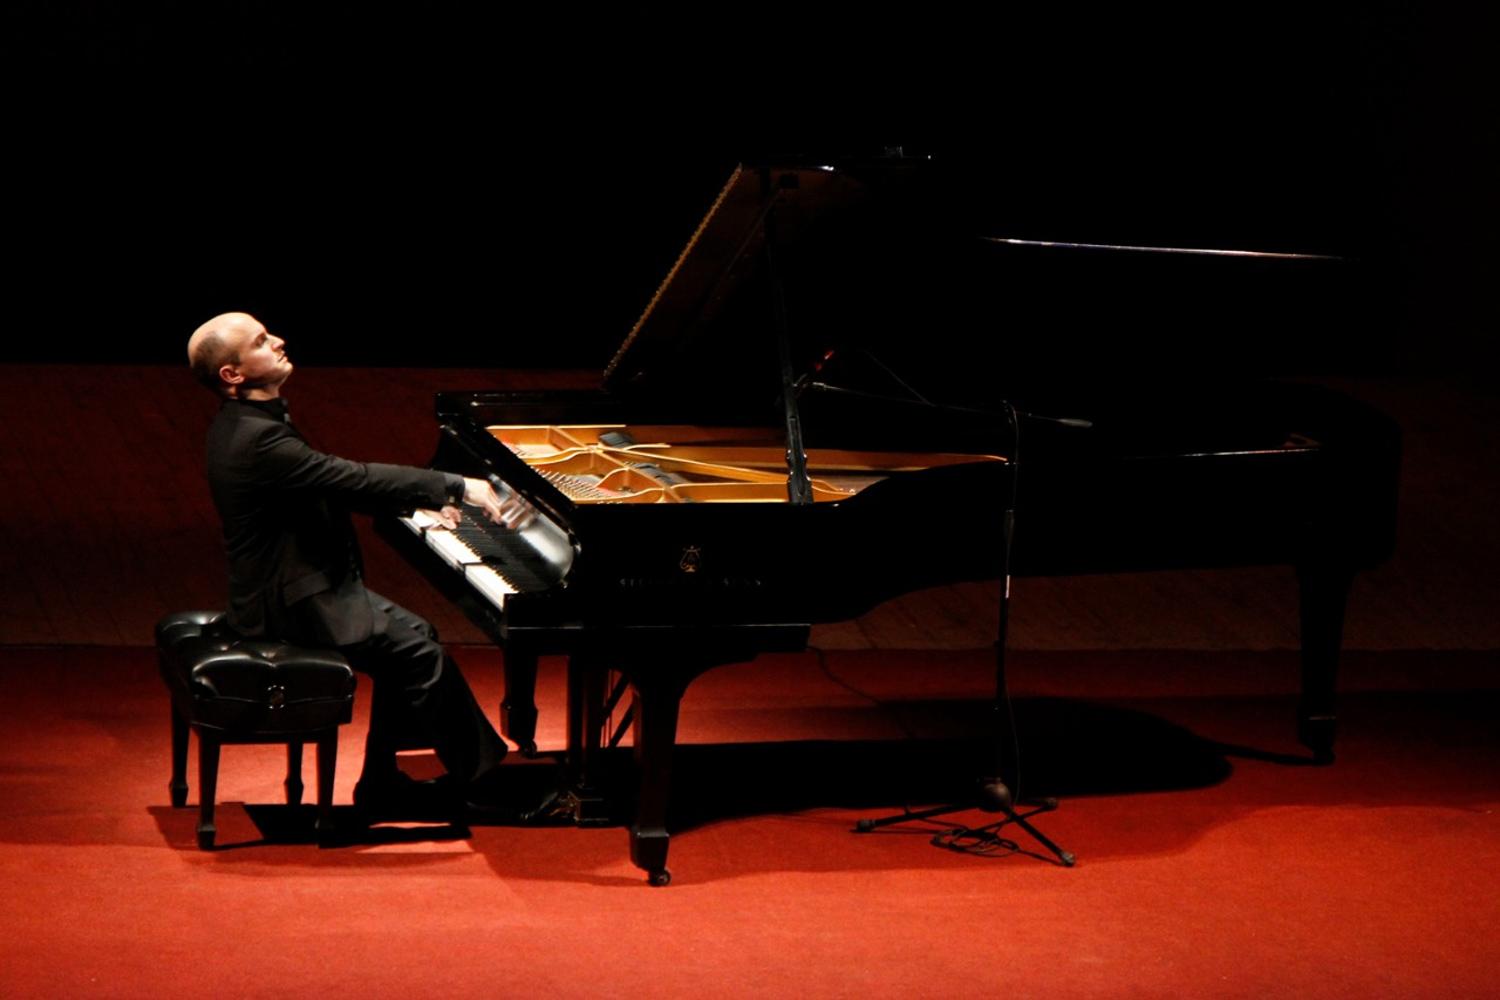 Concurso Internacional de Piano: “el trabajo de la interpretación es un torbellino de ideas”